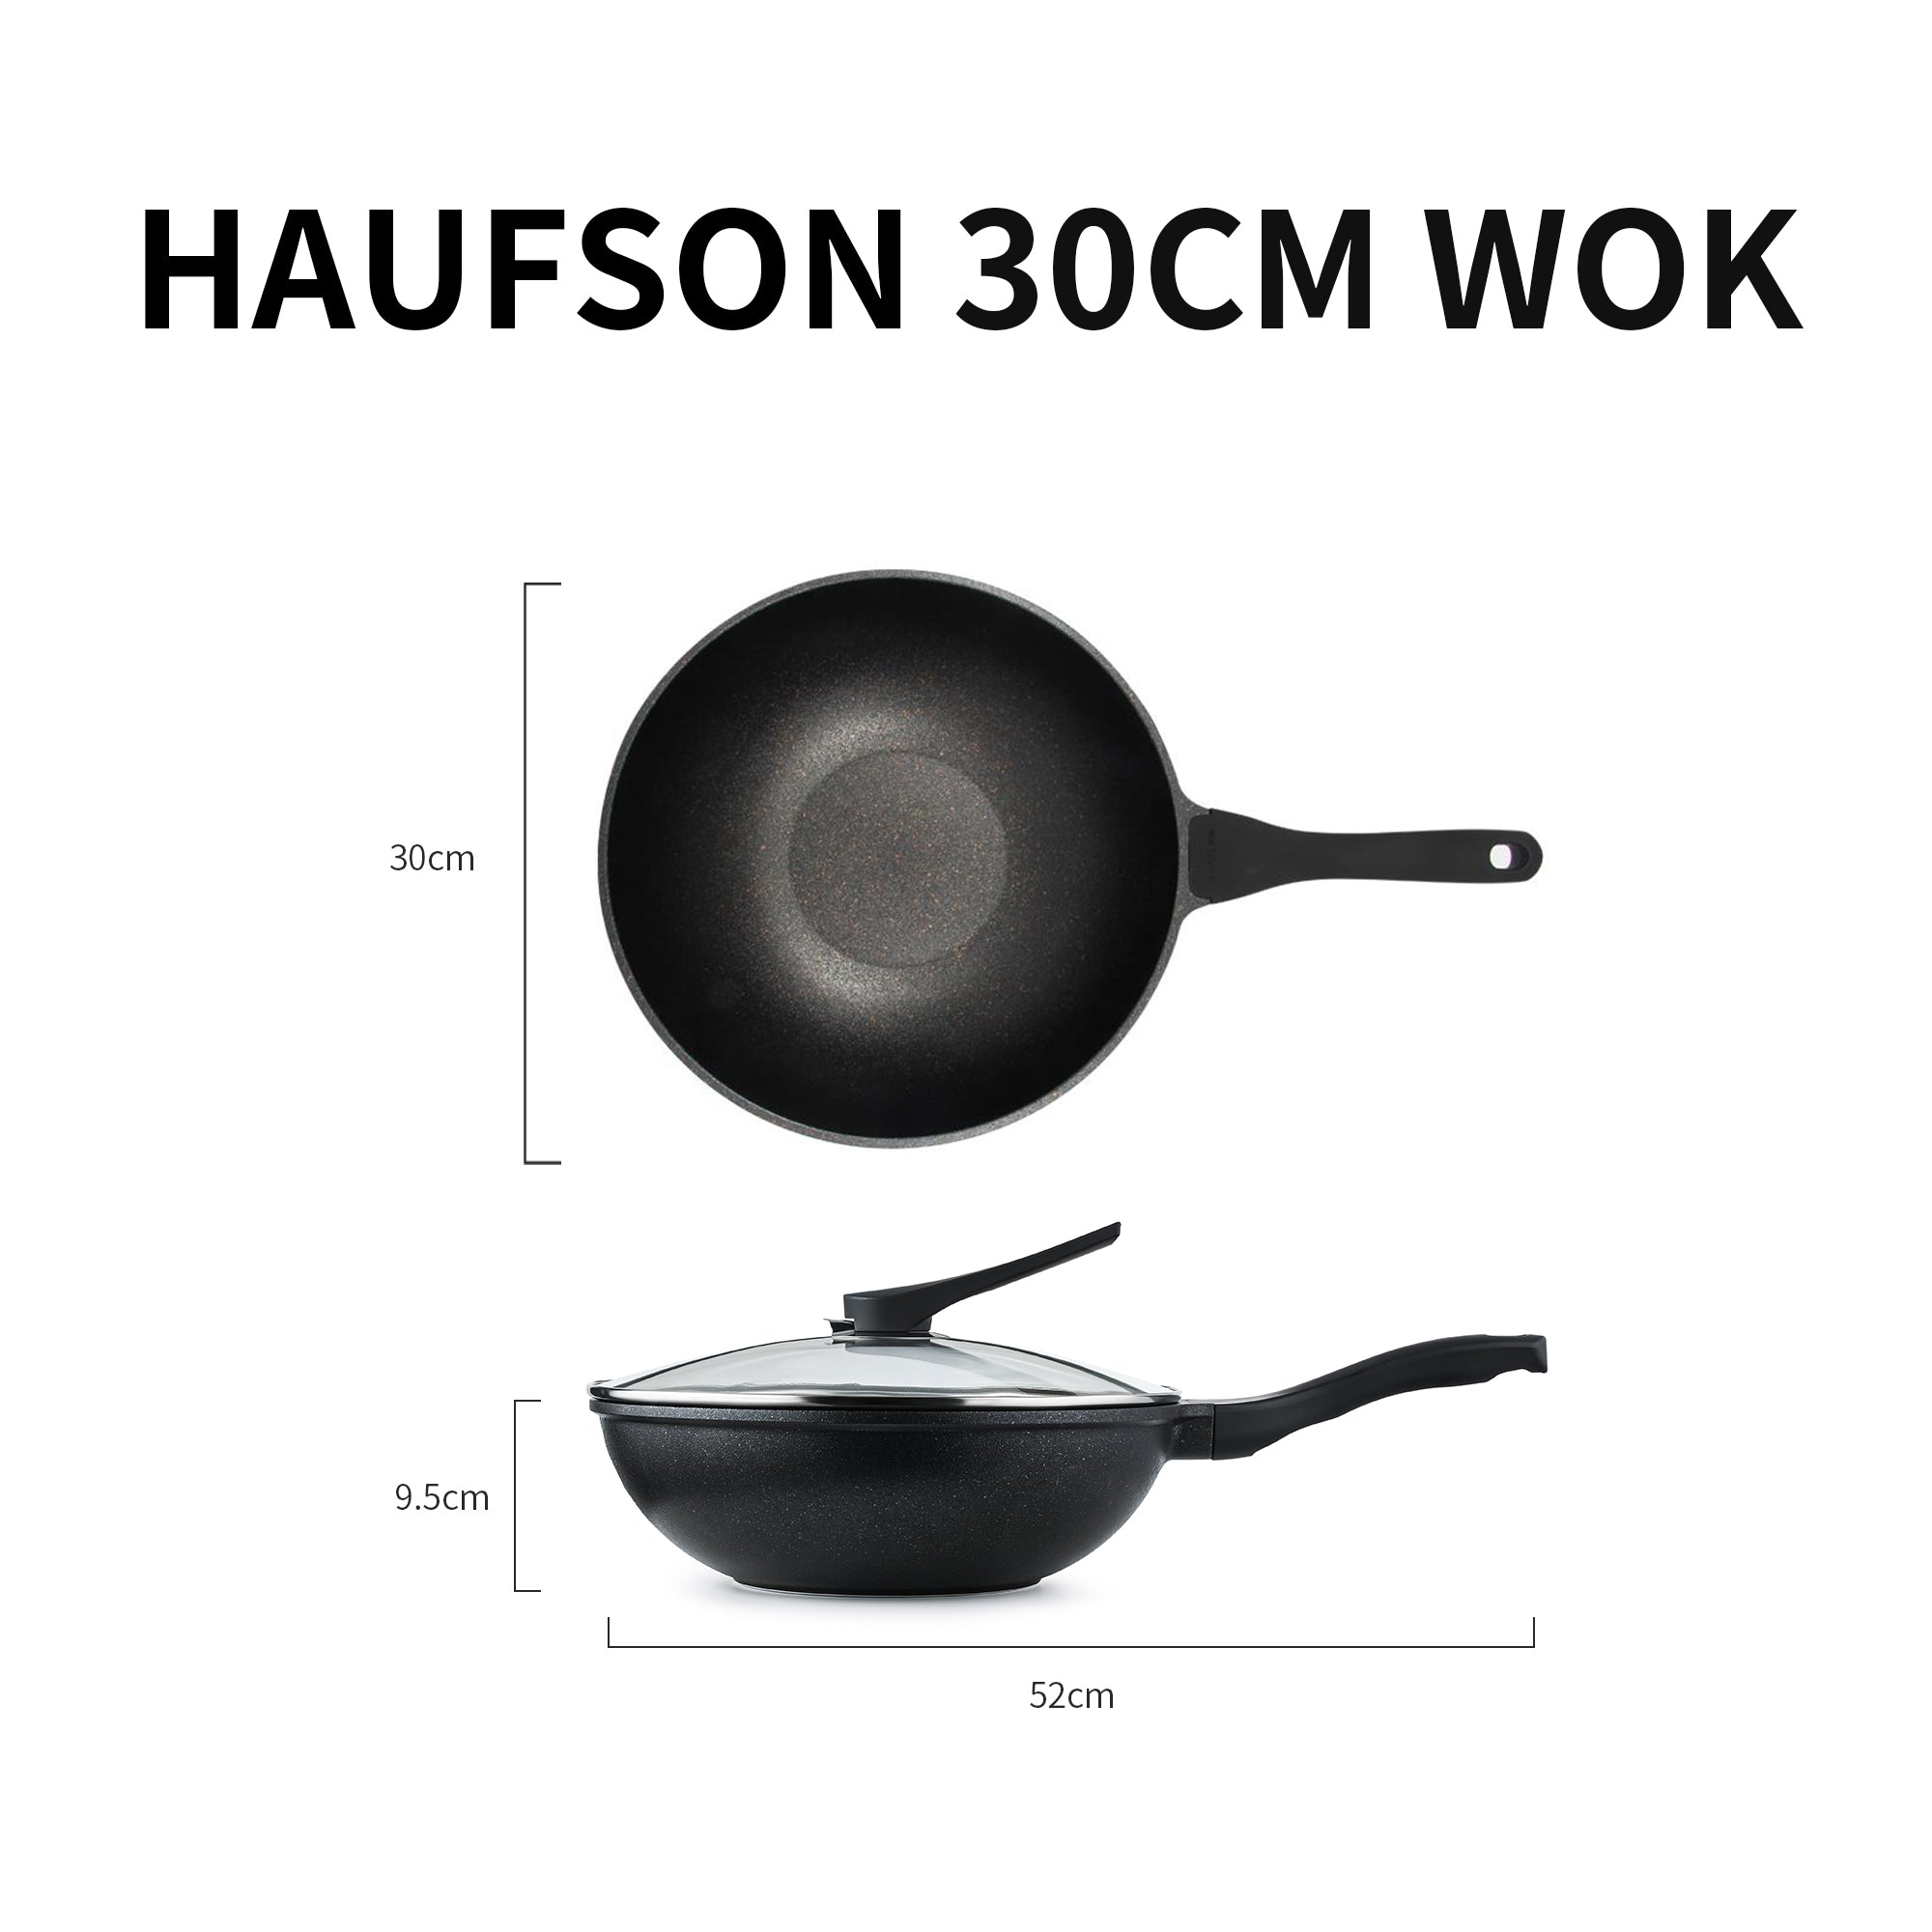 Wok vs Frying Pan – Haufson